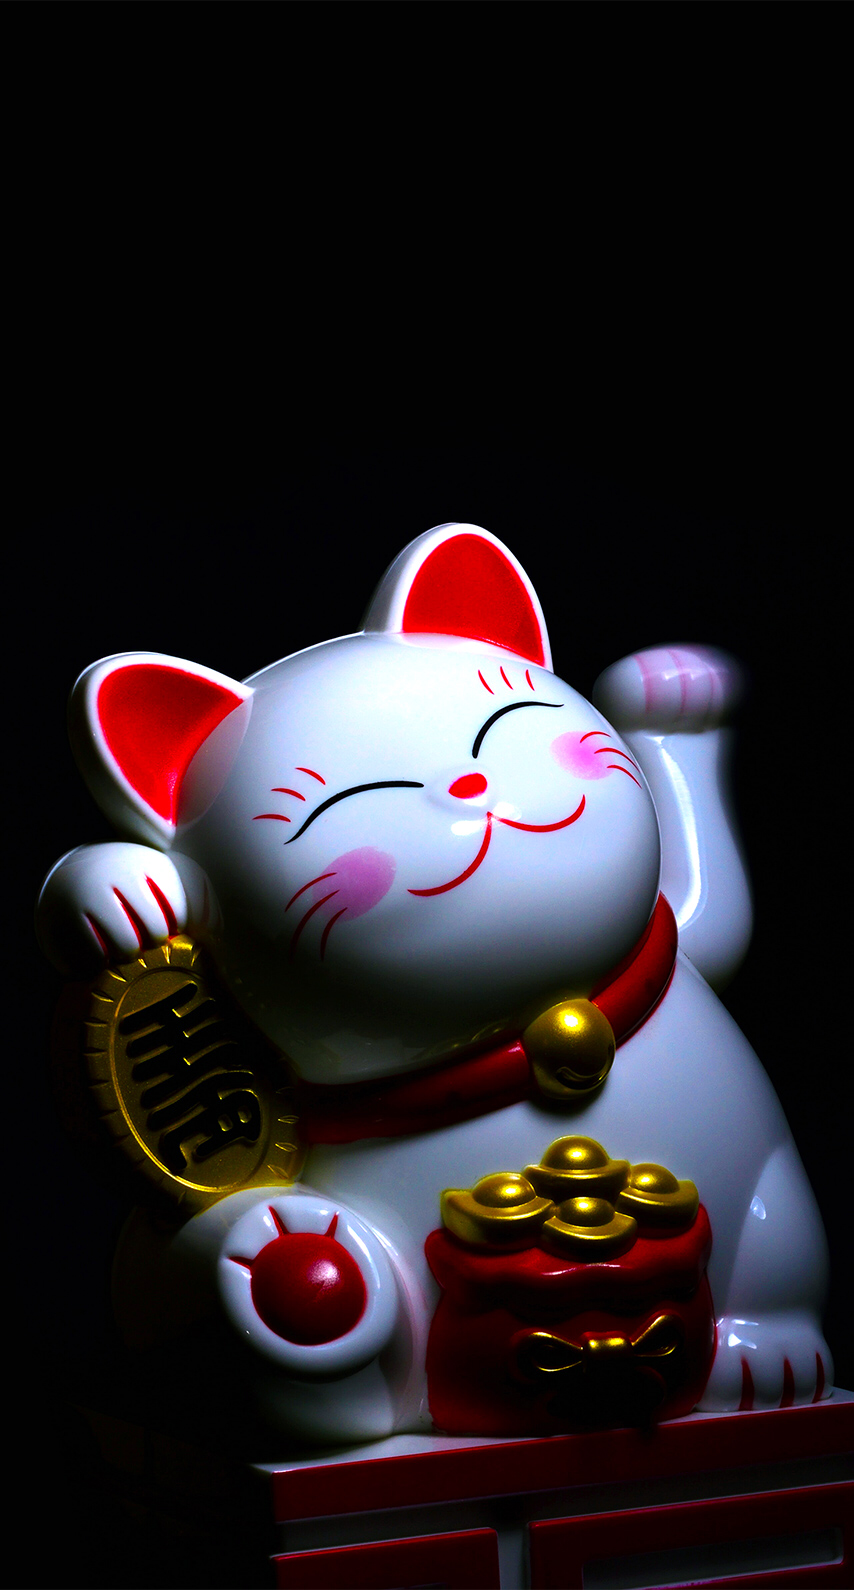 Maneki Neko: Maneki Neko là một trong những biểu tượng đại diện cho văn hóa Nhật Bản, với ý nghĩa may mắn và tài lộc. Hình ảnh những chú mèo đáng yêu này sẽ mang lại cho người xem sự thư giãn và hạnh phúc. Hãy đến đây để xem những hình ảnh Maneki Neko đáng yêu và nhấp chuột để có một ngày may mắn nhé!